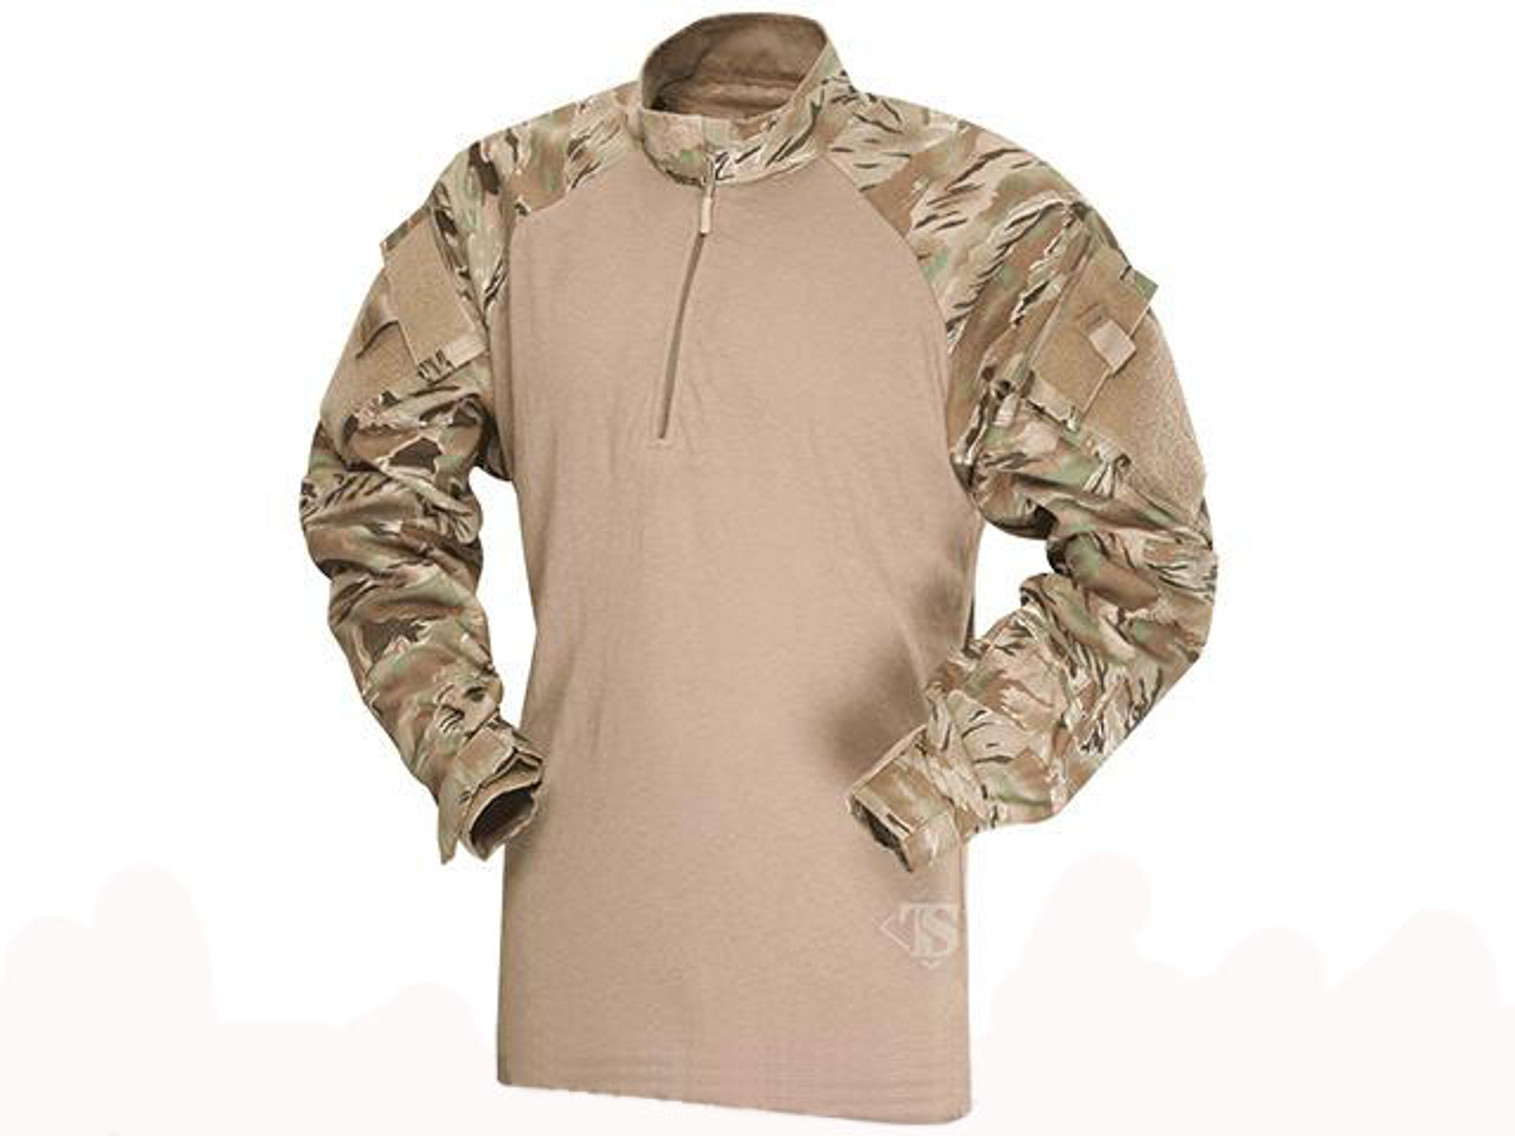 Tru-Spec Tactical Response Uniform 1/4 Zip Combat Shirt - All-Terrain Tiger Stripe (Size: Medium)